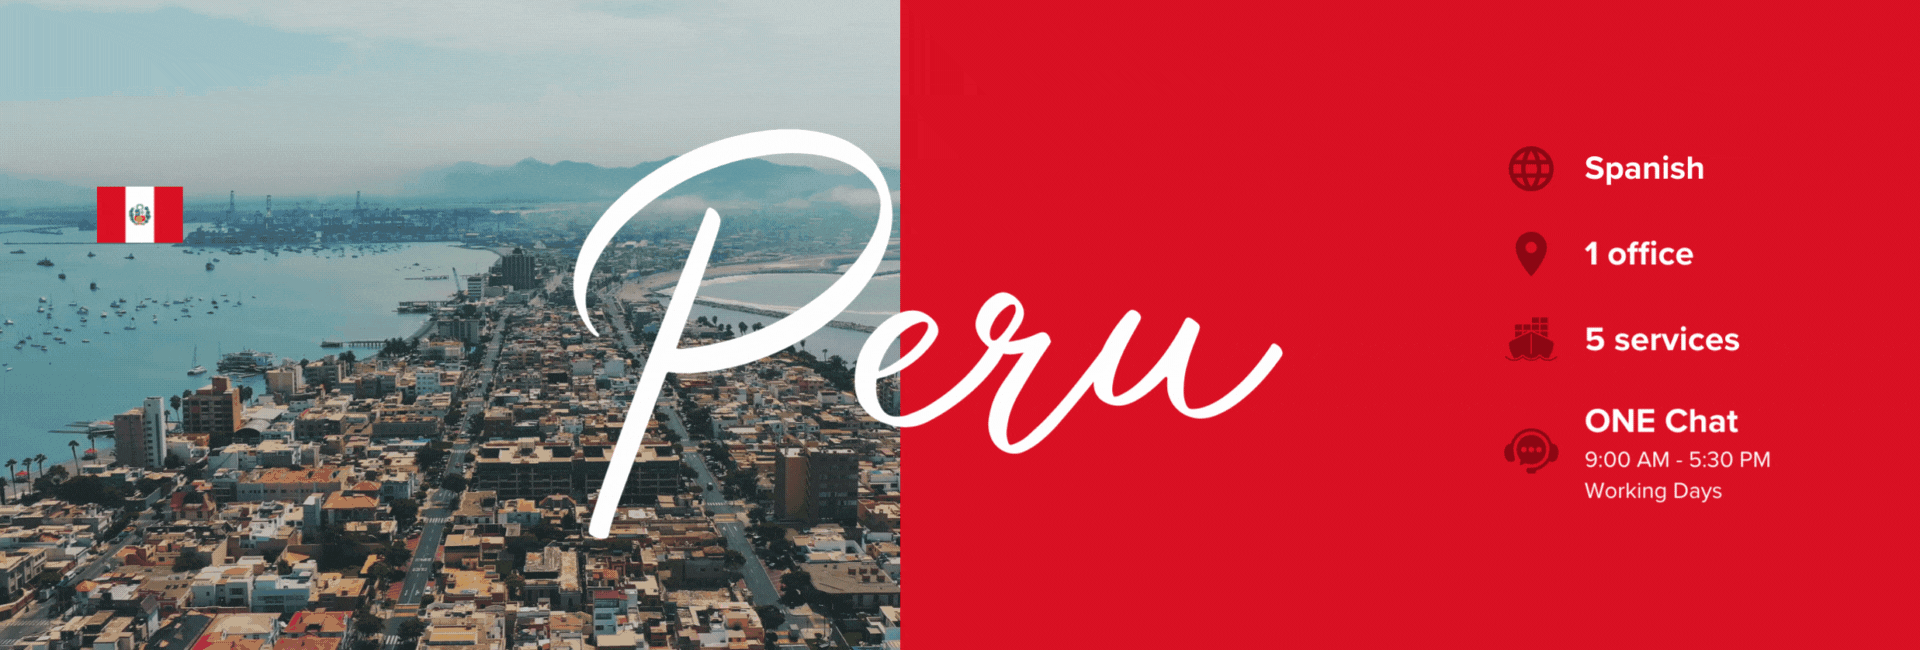 Header-Peru-English